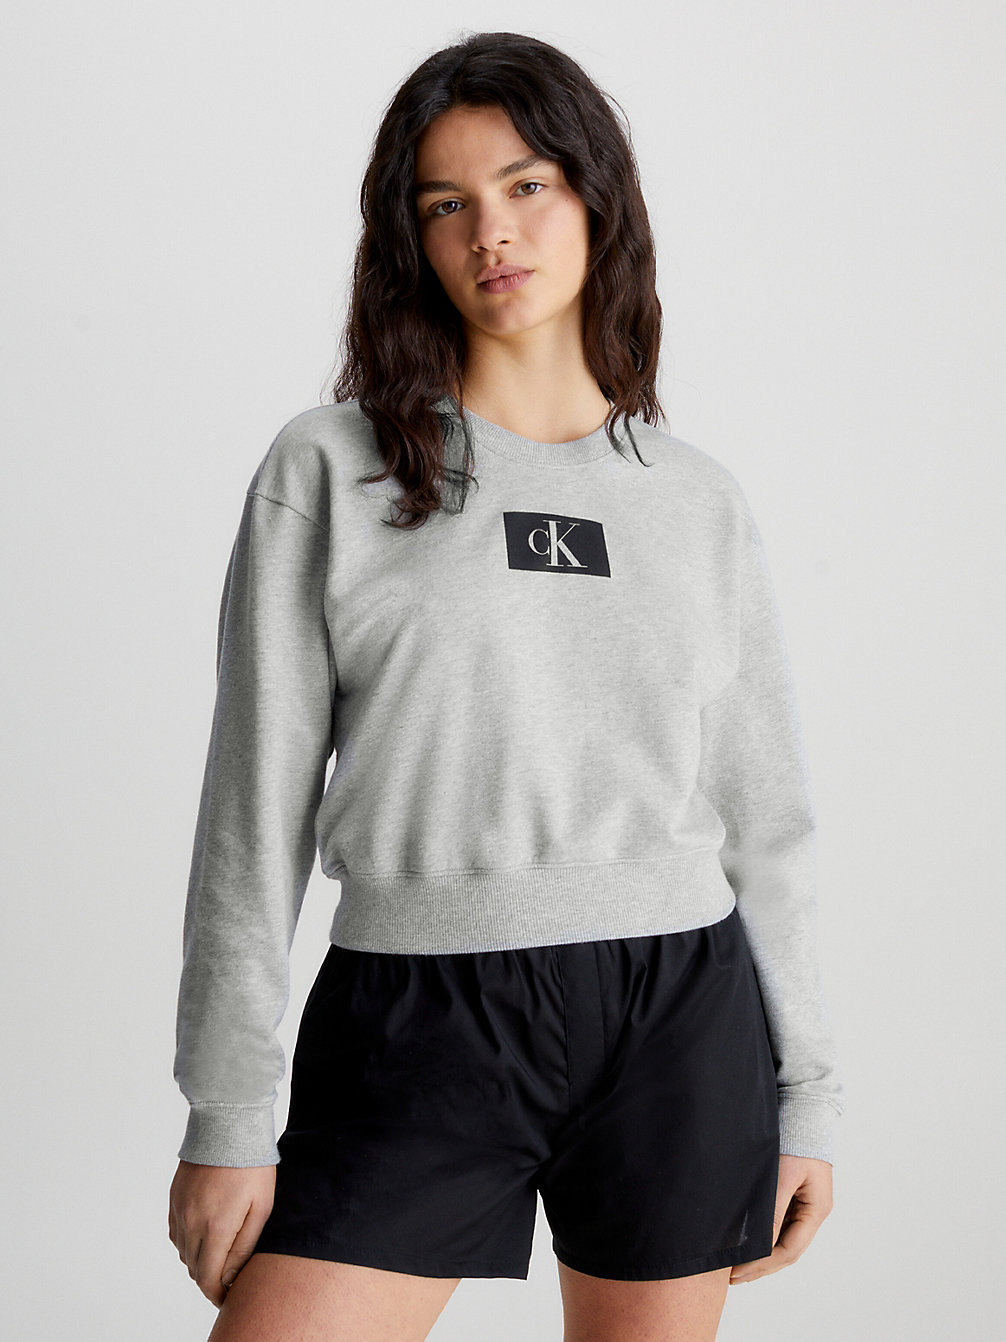 GREY HEATHER > Lounge Sweatshirt - Ck96 > undefined Женщины - Calvin Klein